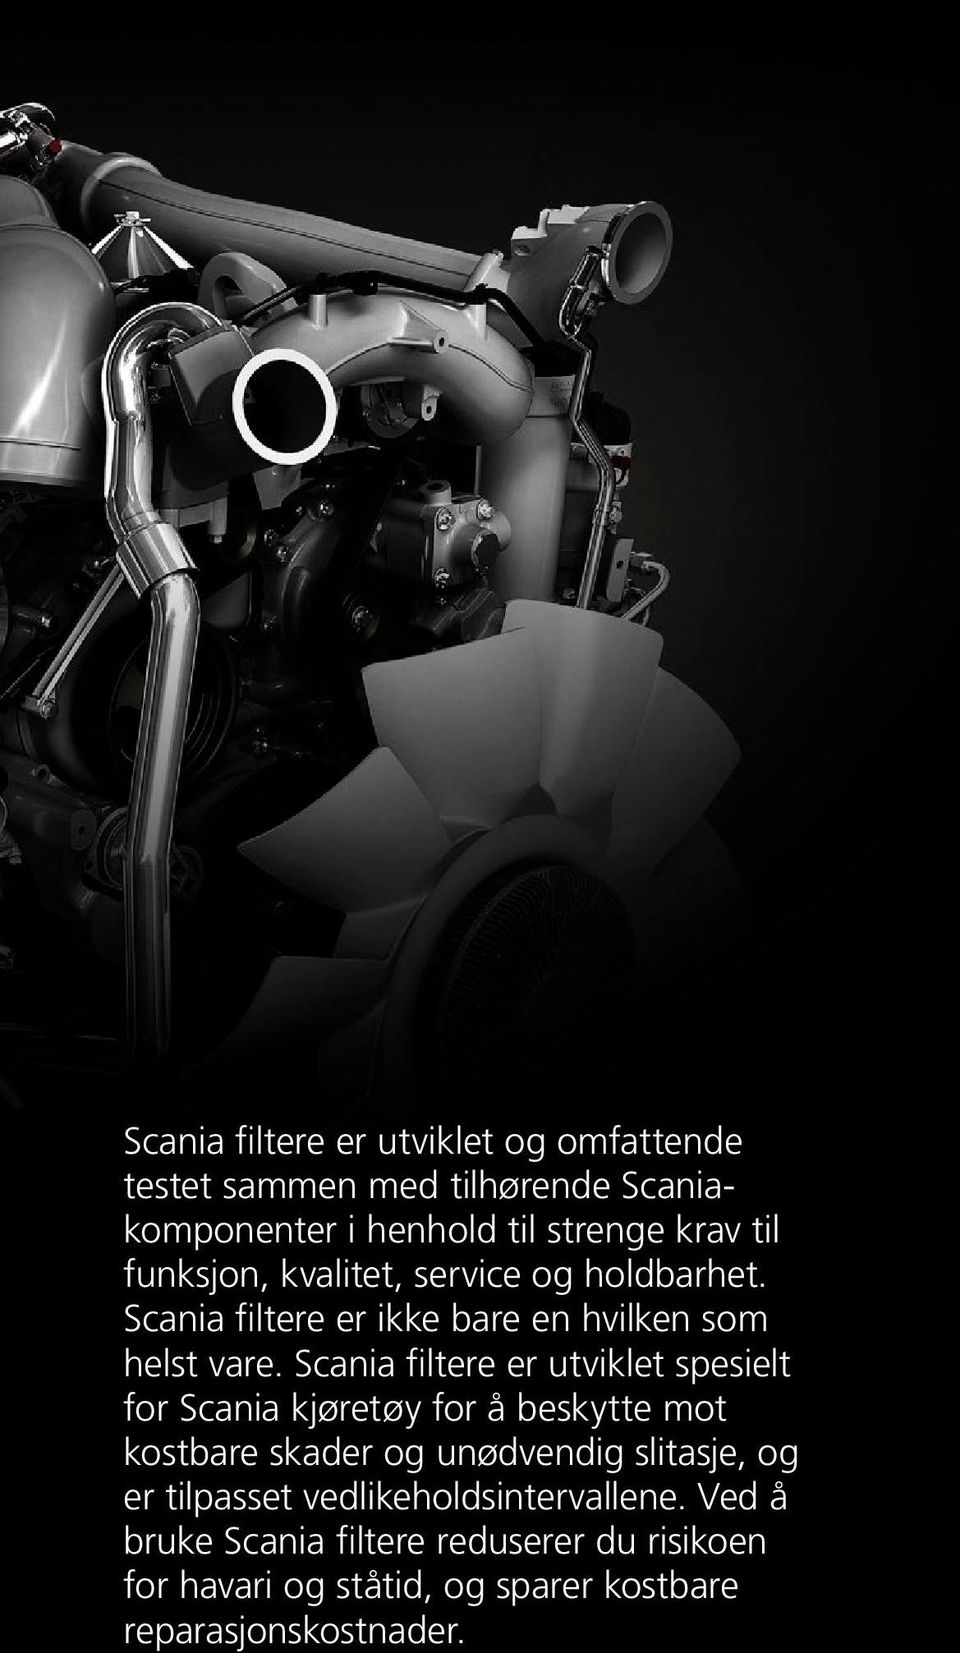 Scania filtere er utviklet spesielt for Scania kjøretøy for å beskytte mot kostbare skader og unødvendig slitasje, og er